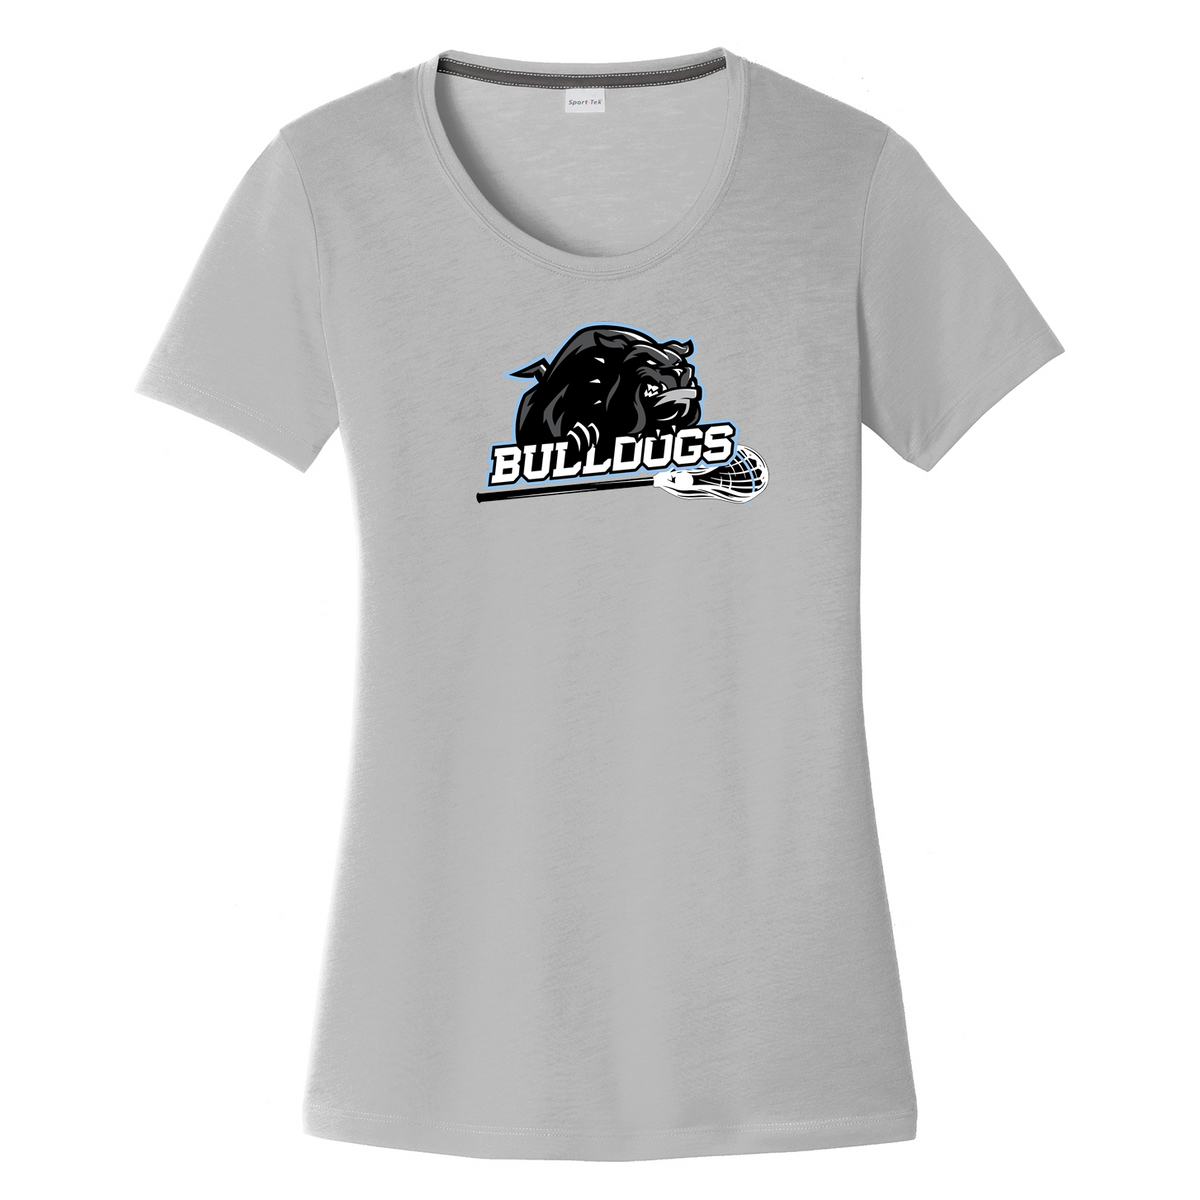 Centennial Bulldogs Women's CottonTouch Performance T-Shirt